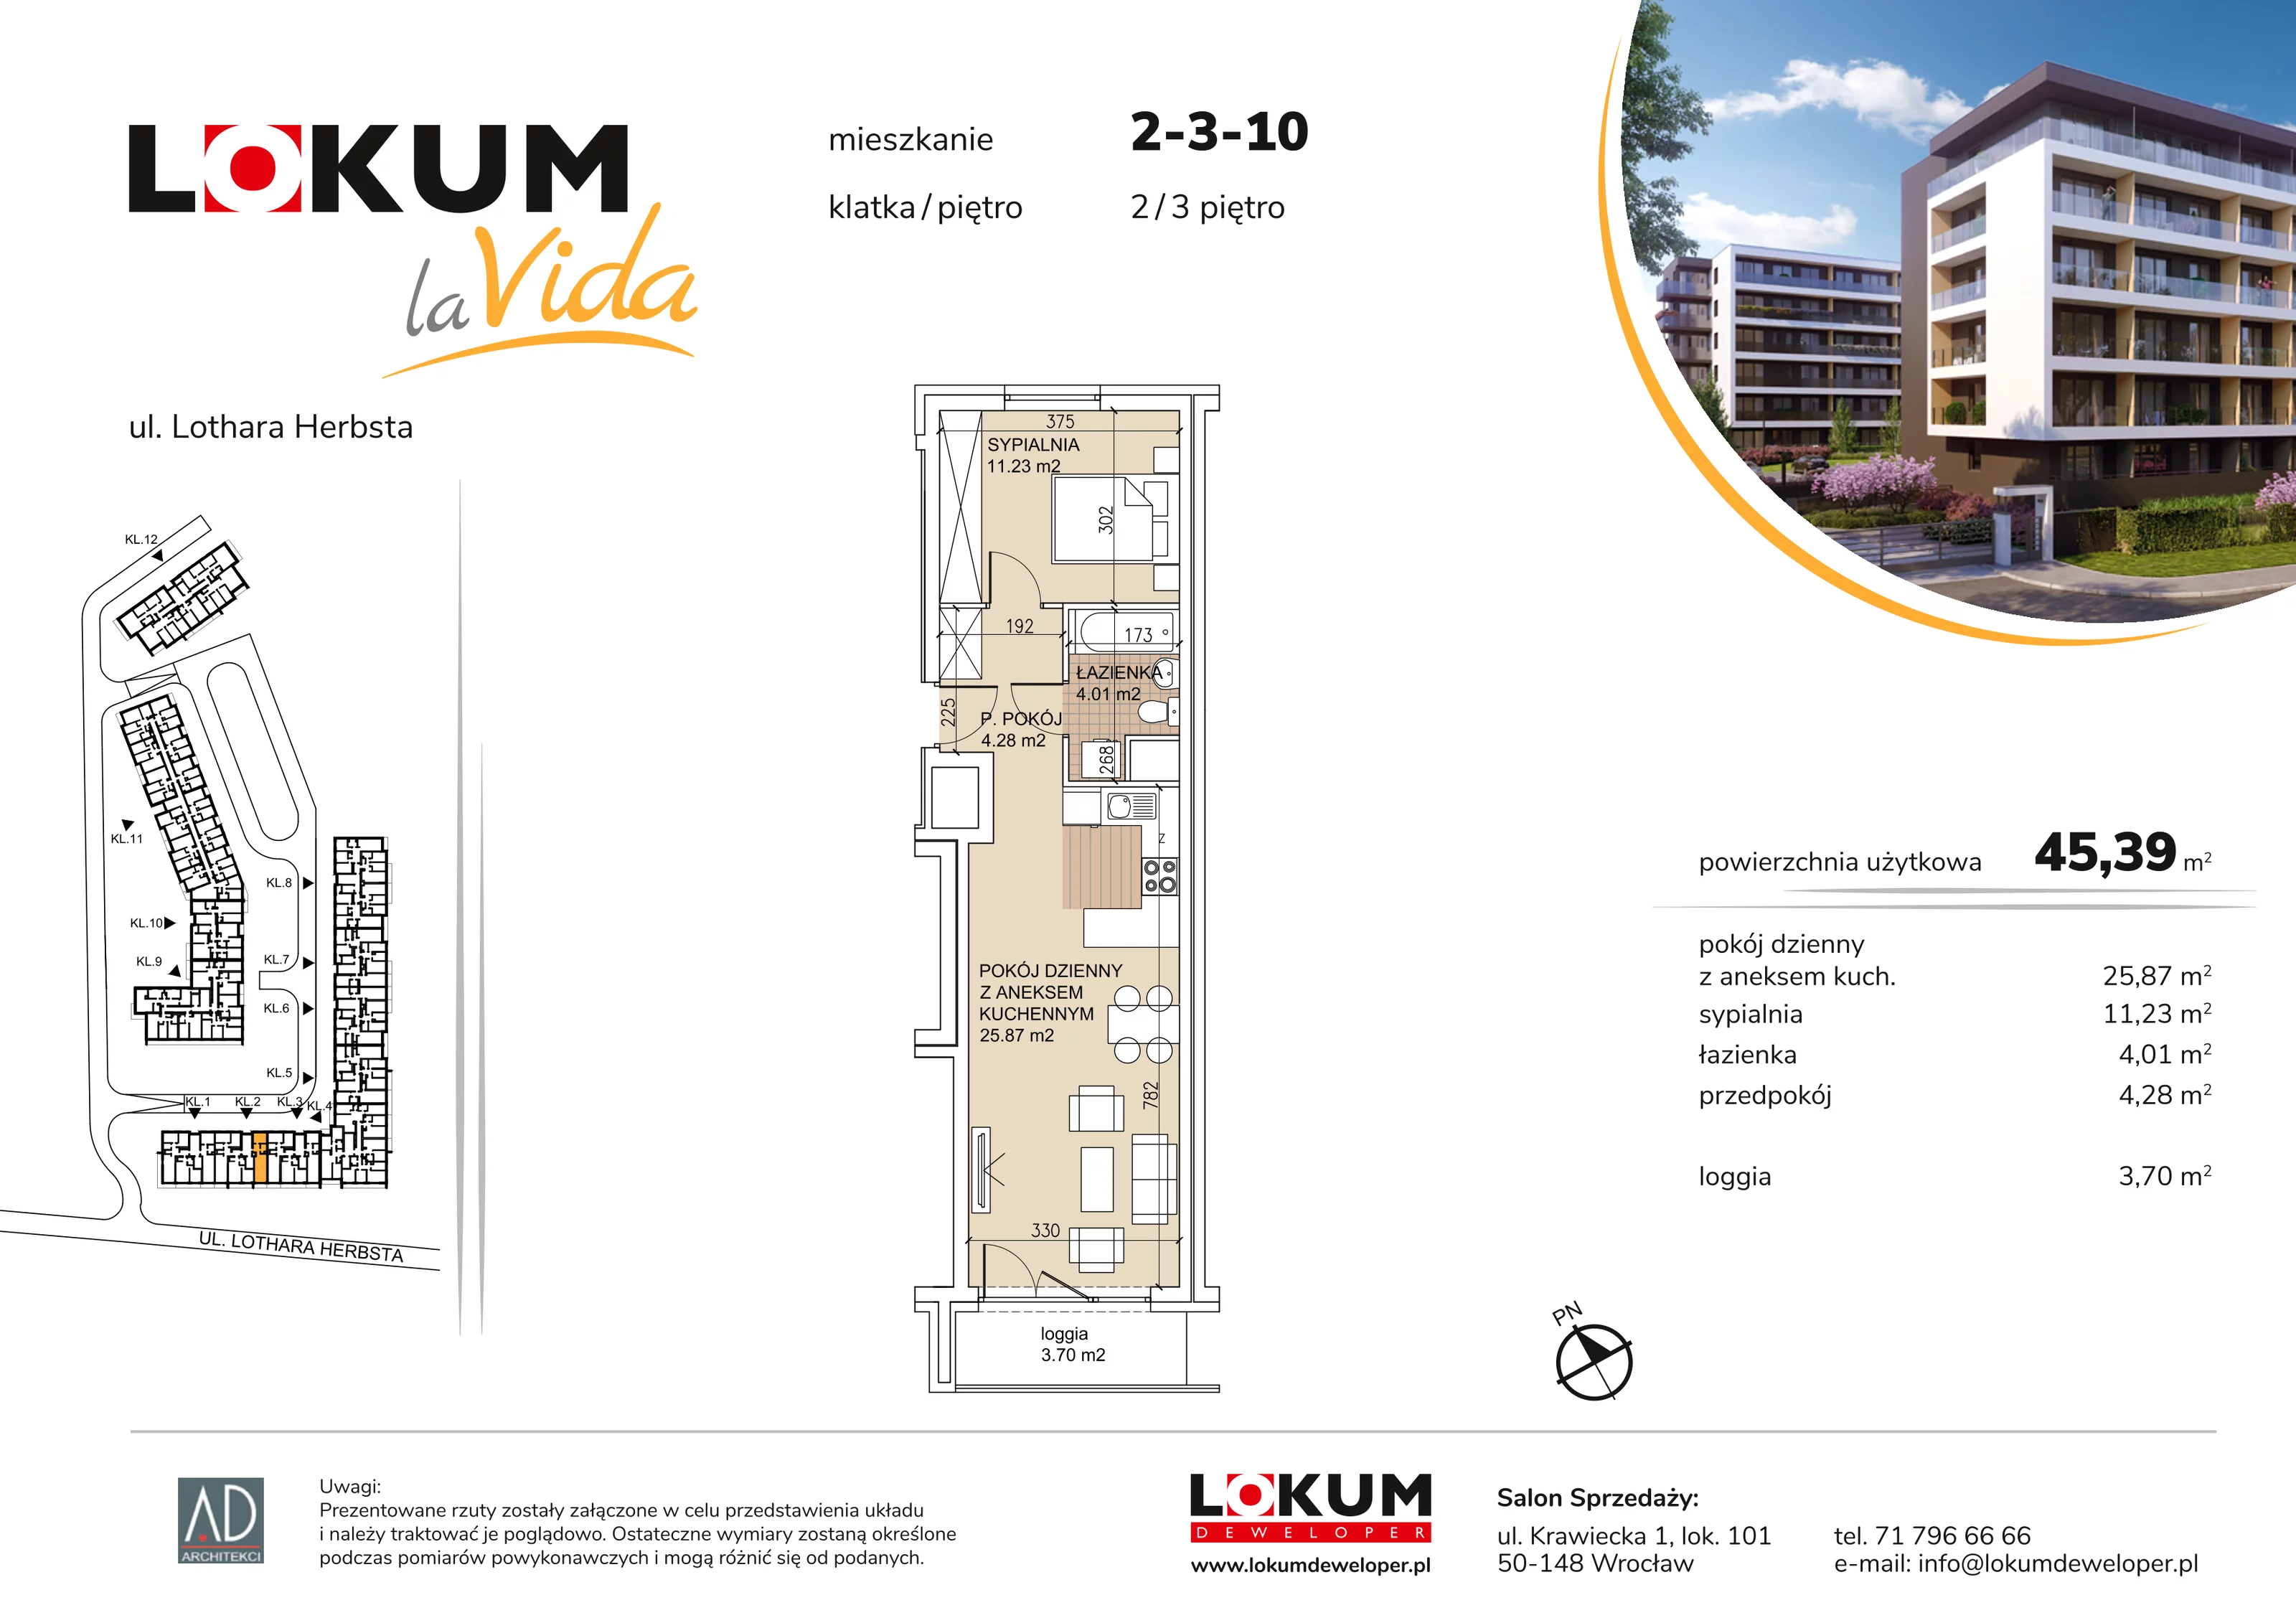 Mieszkanie 45,39 m², piętro 3, oferta nr 2-3-10, Lokum la Vida, Wrocław, Sołtysowice, ul. Lothara Herbsta